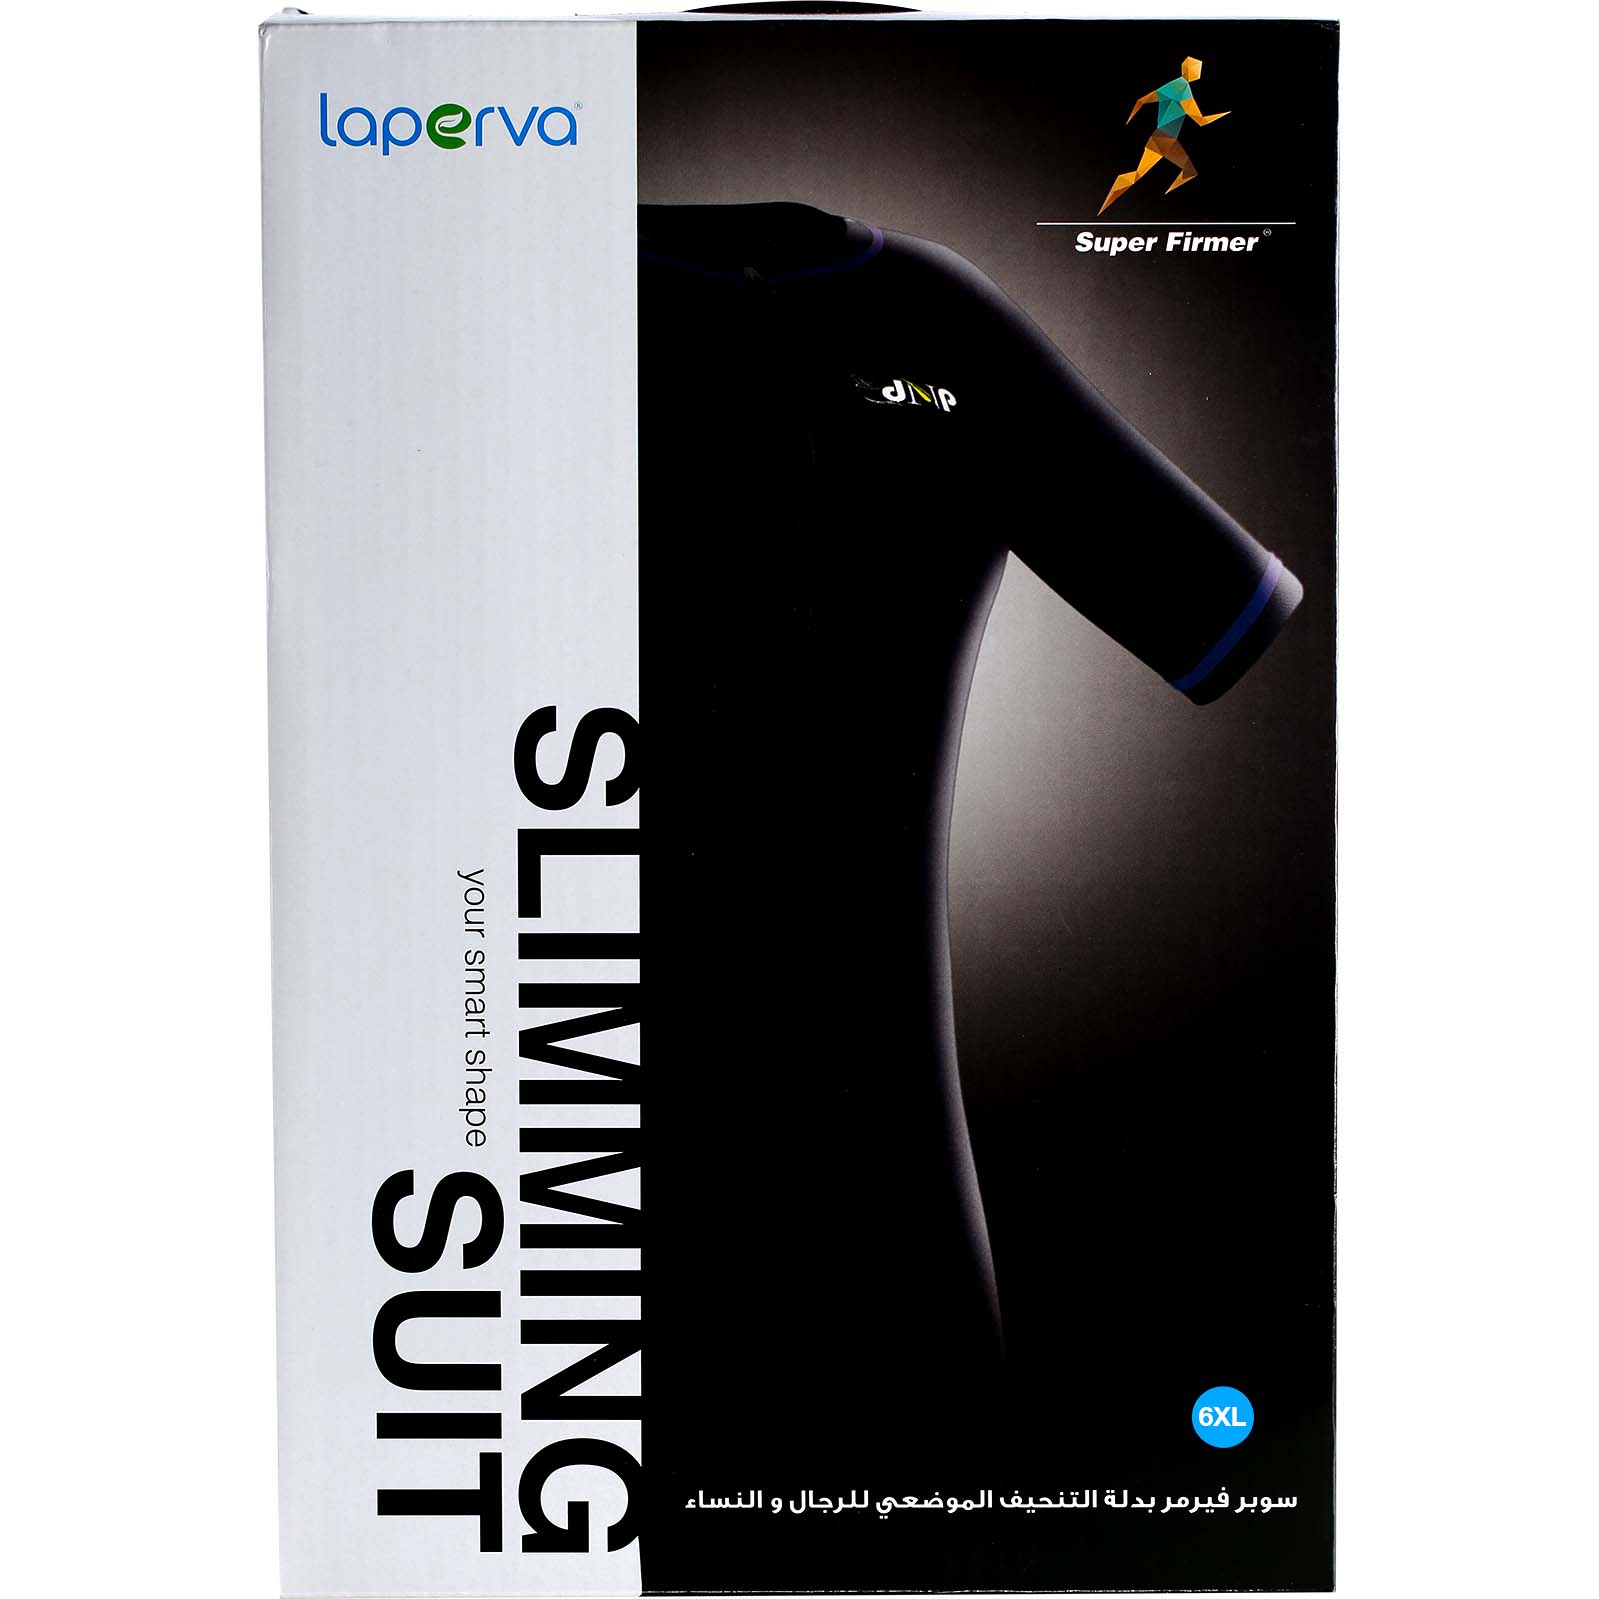 Laperva Slimming Suit, 6 XL, Black